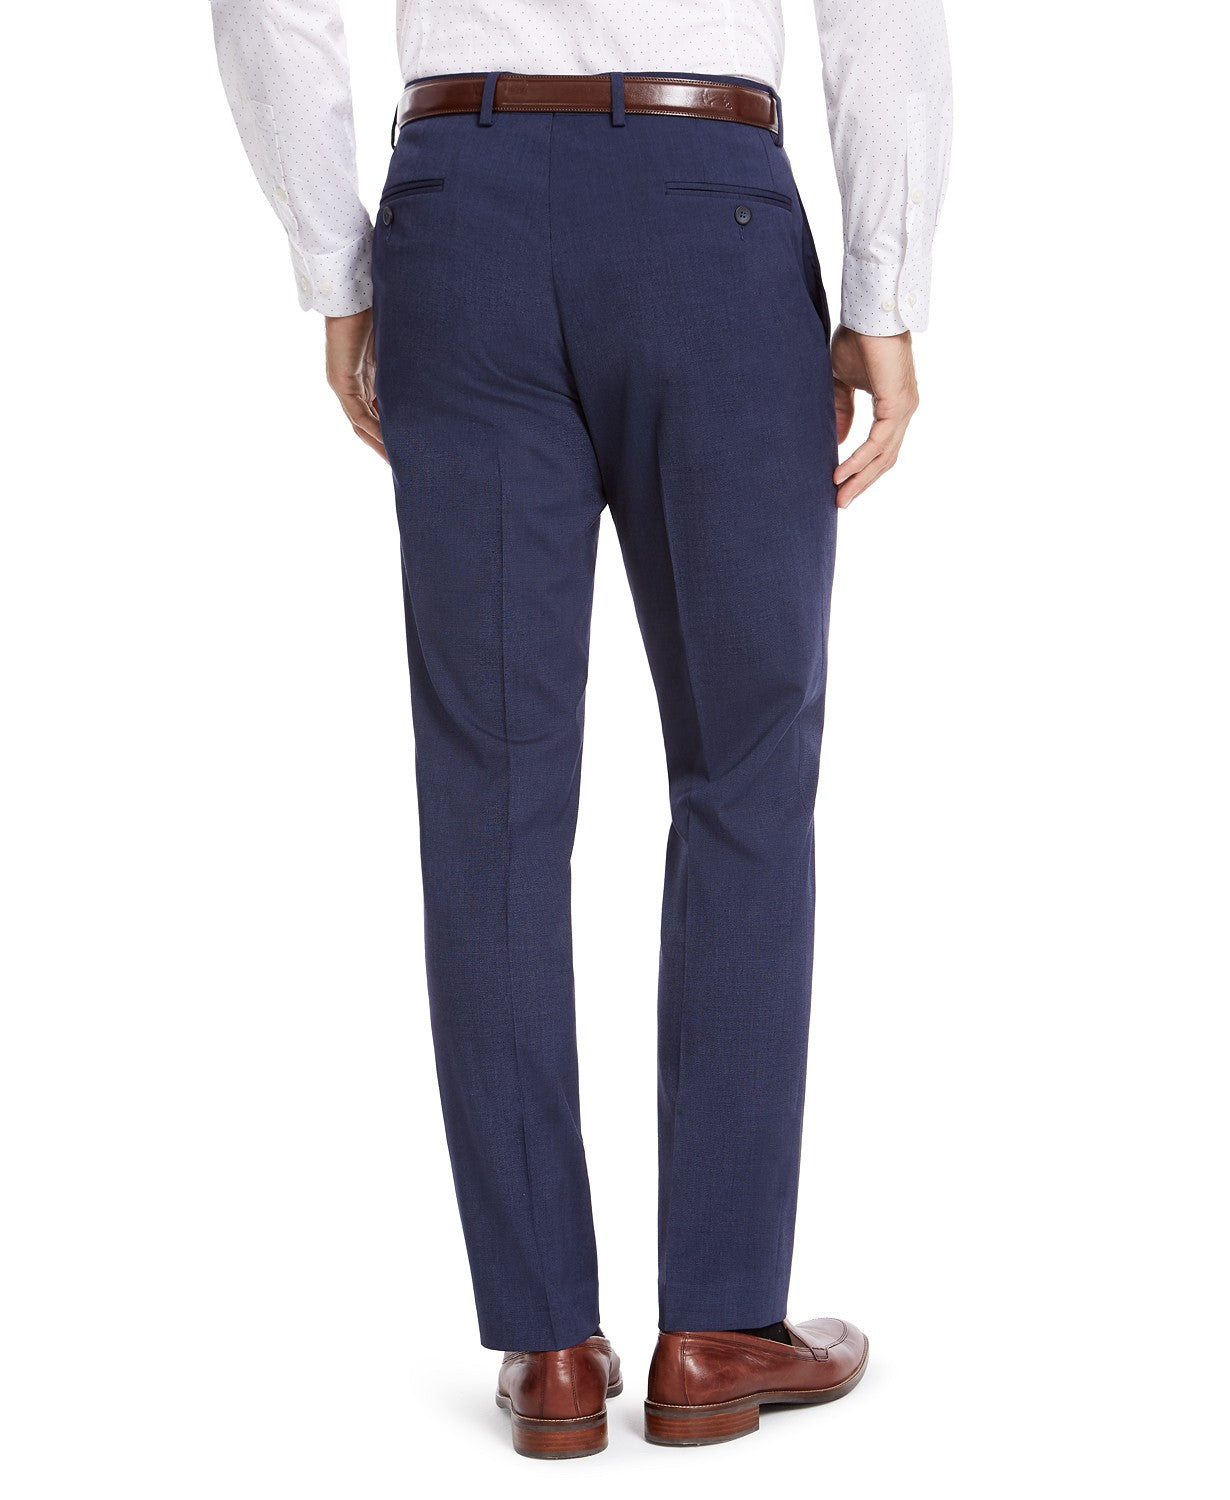 IZOD Men's Classic-Fit Suit Pants Mid Blue Flat Pant 30 x 30